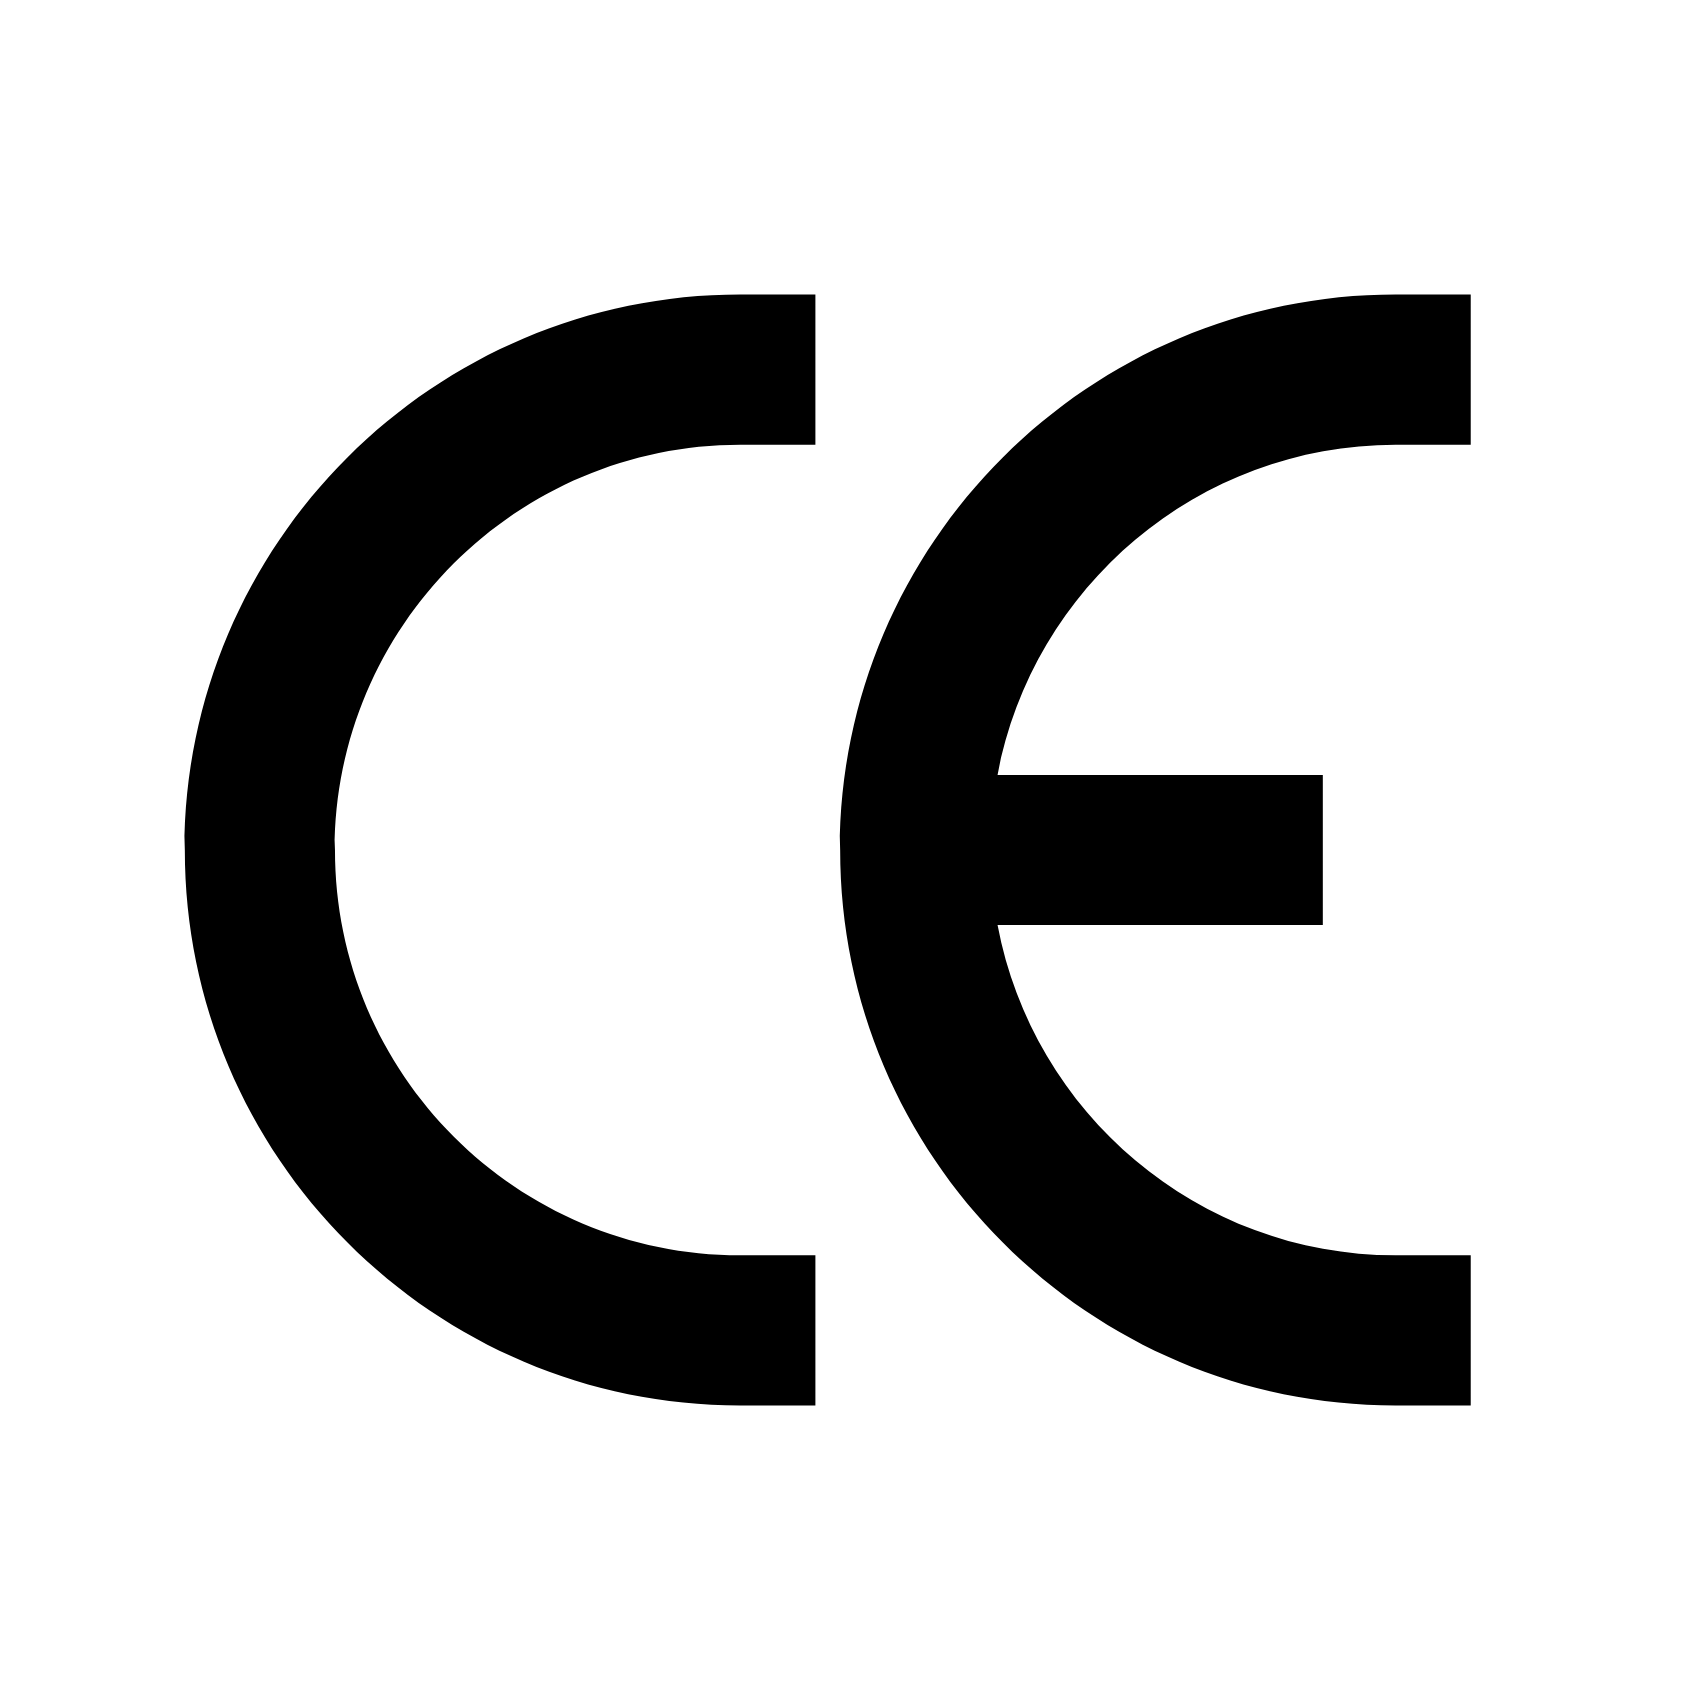 CE